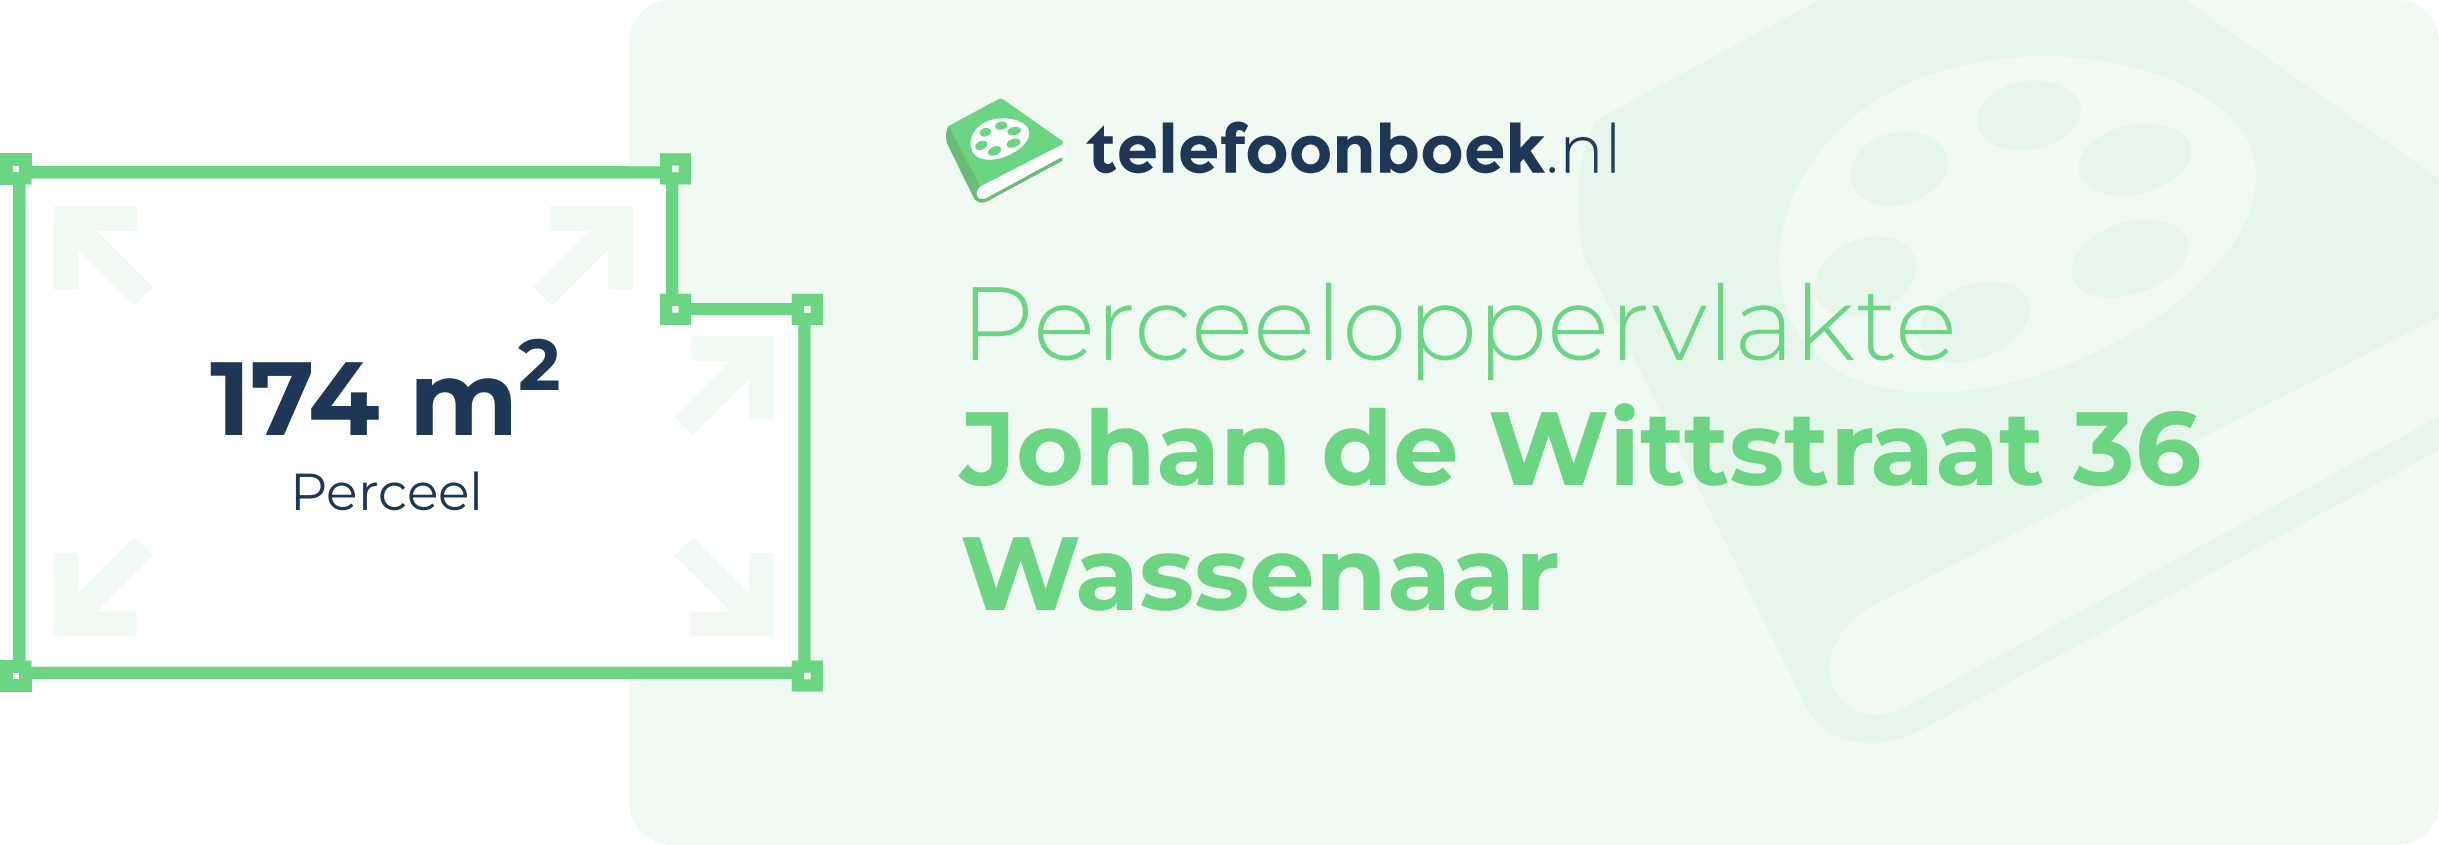 Perceeloppervlakte Johan De Wittstraat 36 Wassenaar